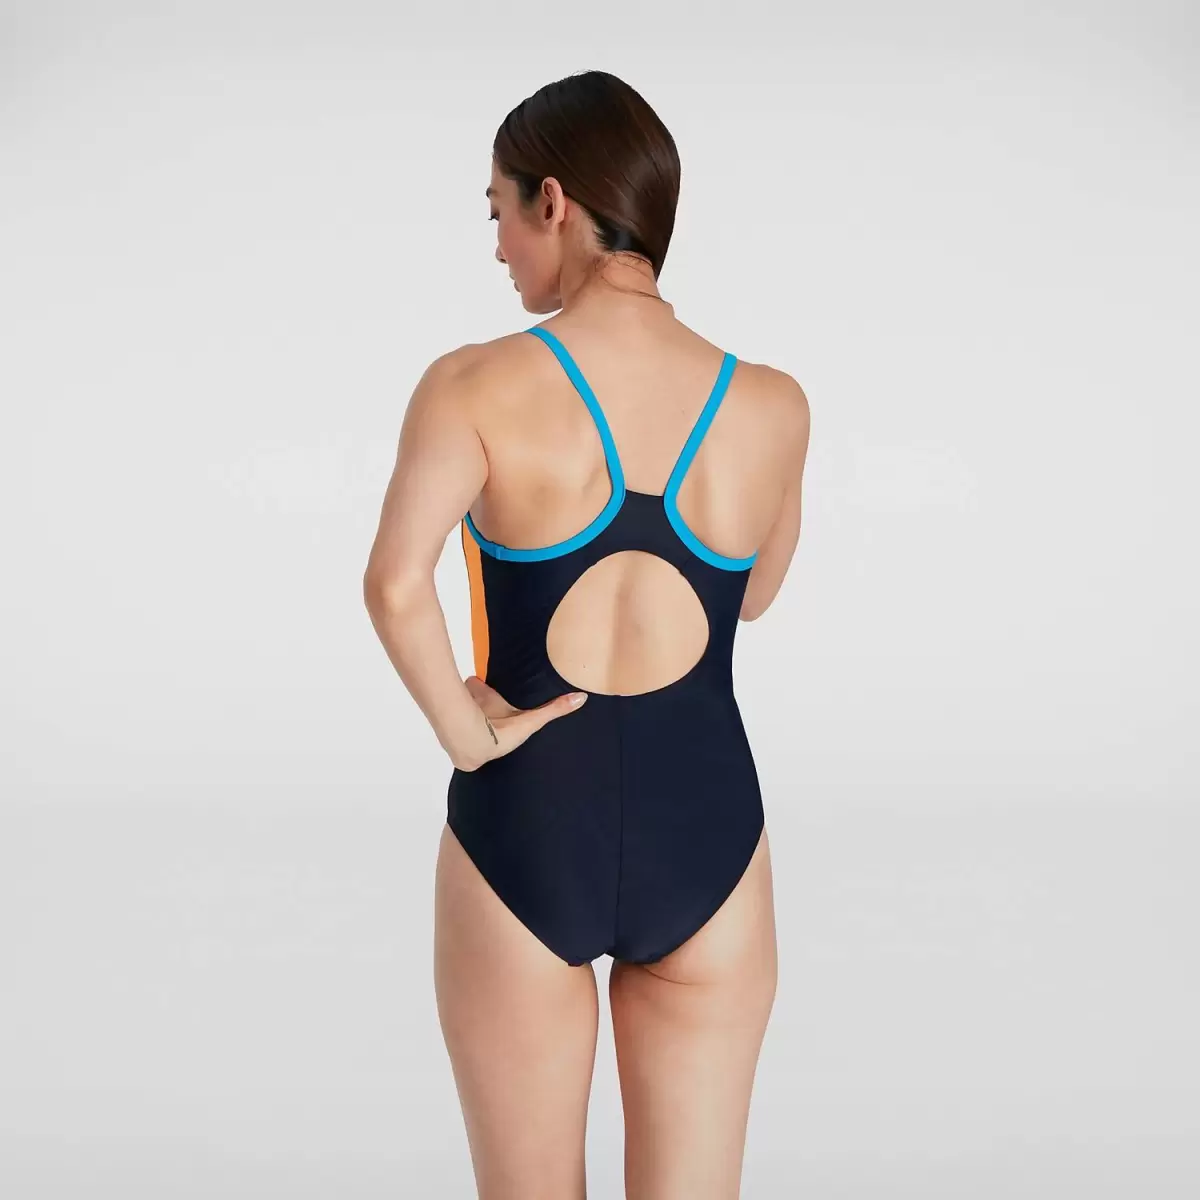 Damen Dive Thinstrap Muscleback Badeanzug Blau/Orange Für Damen Badeanzüge Speedo - 3